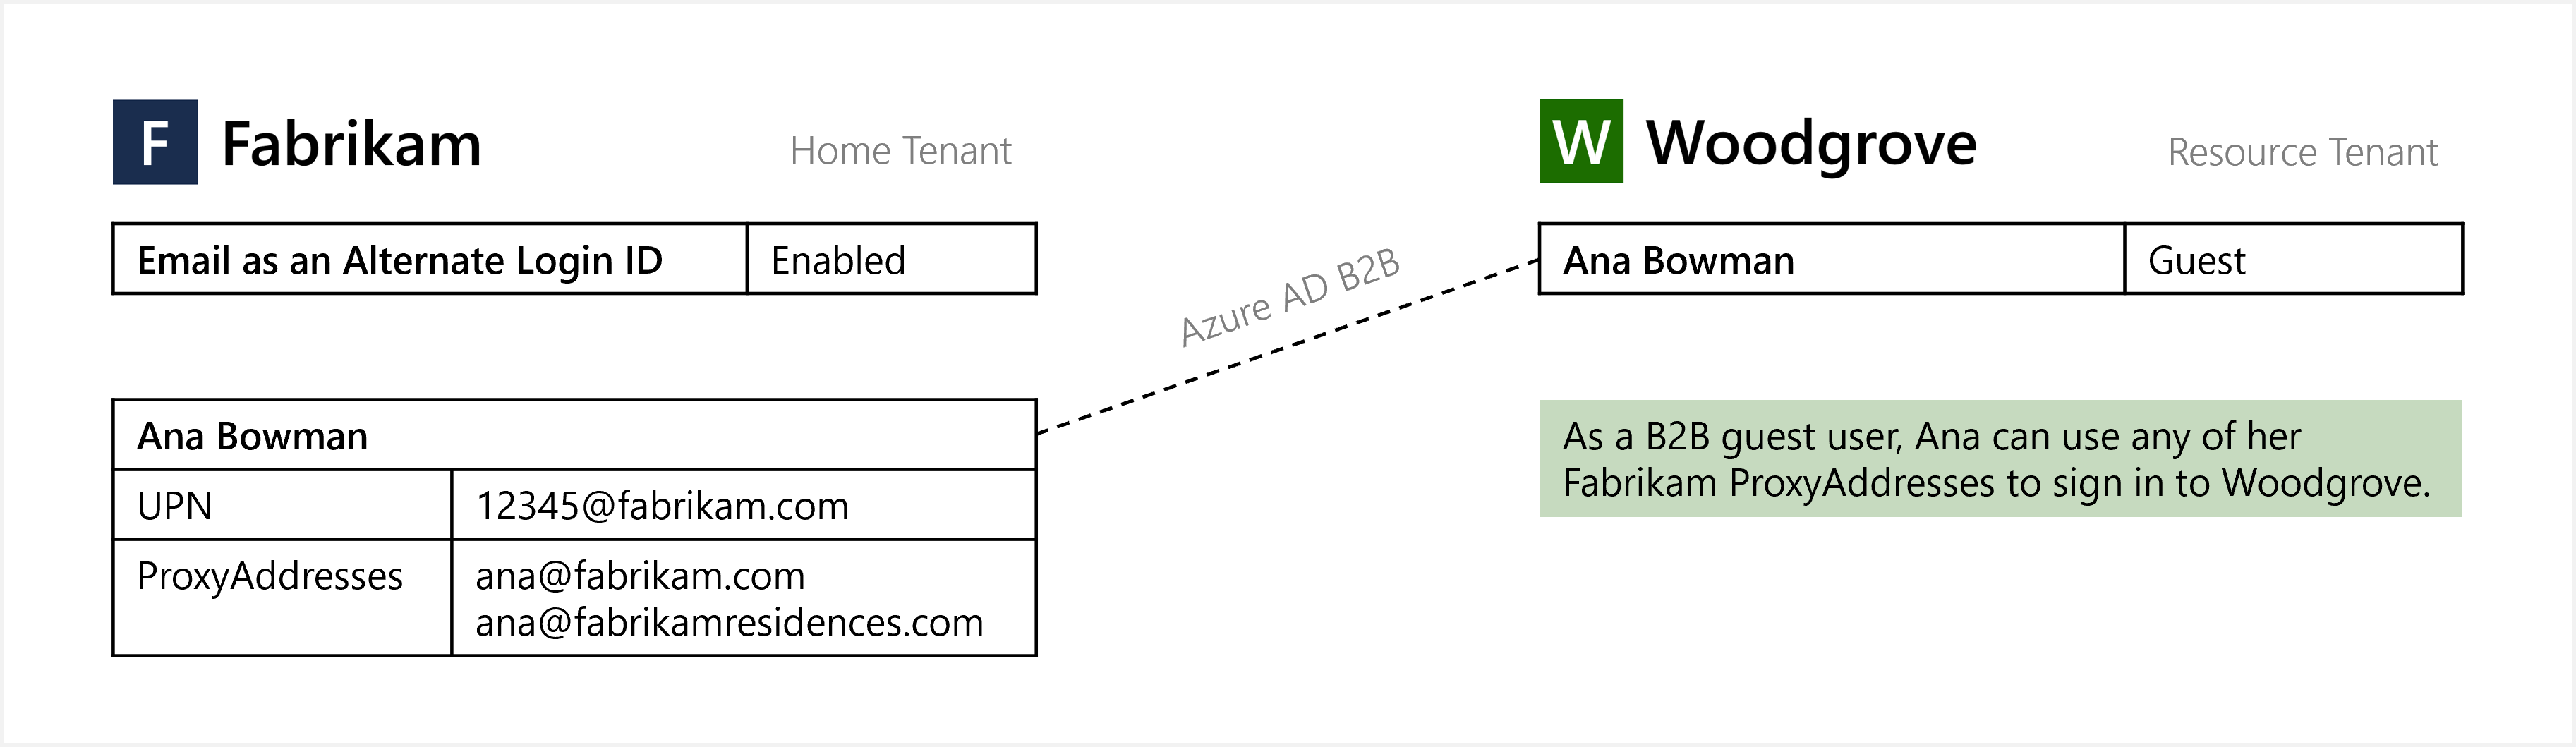 Diagrama de email como uma ID de logon alternativa para a entrada de usuário B2B convidado.